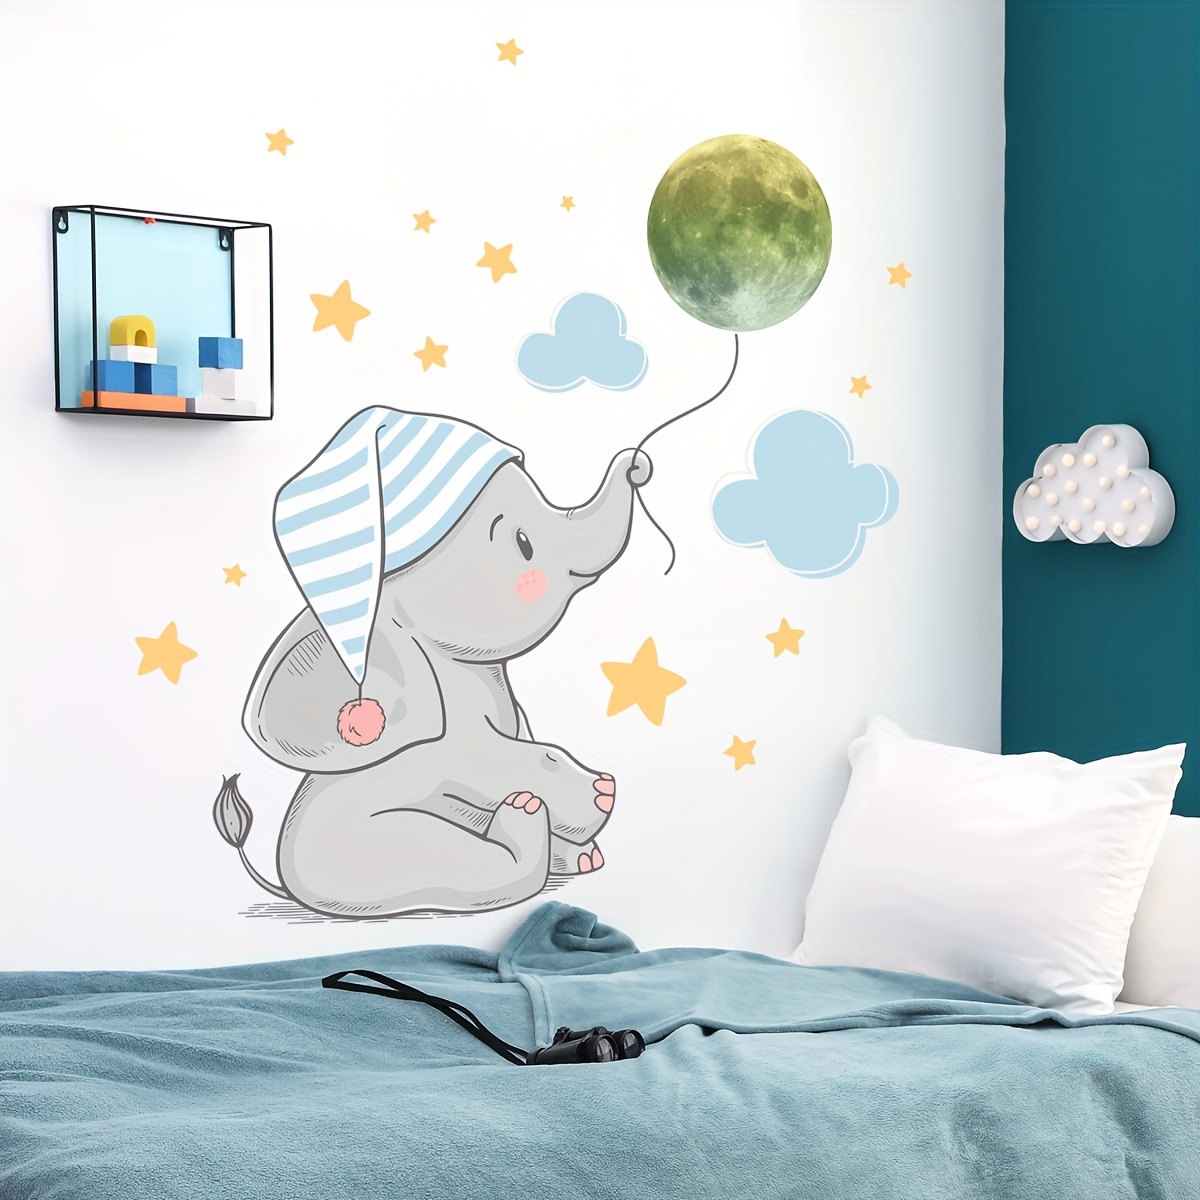 Vinilo decorativo Dream Big Little One Elefante, calcomanías de pared con  cita, decoración de pared de habitación de bebé, calcomanías de pared de